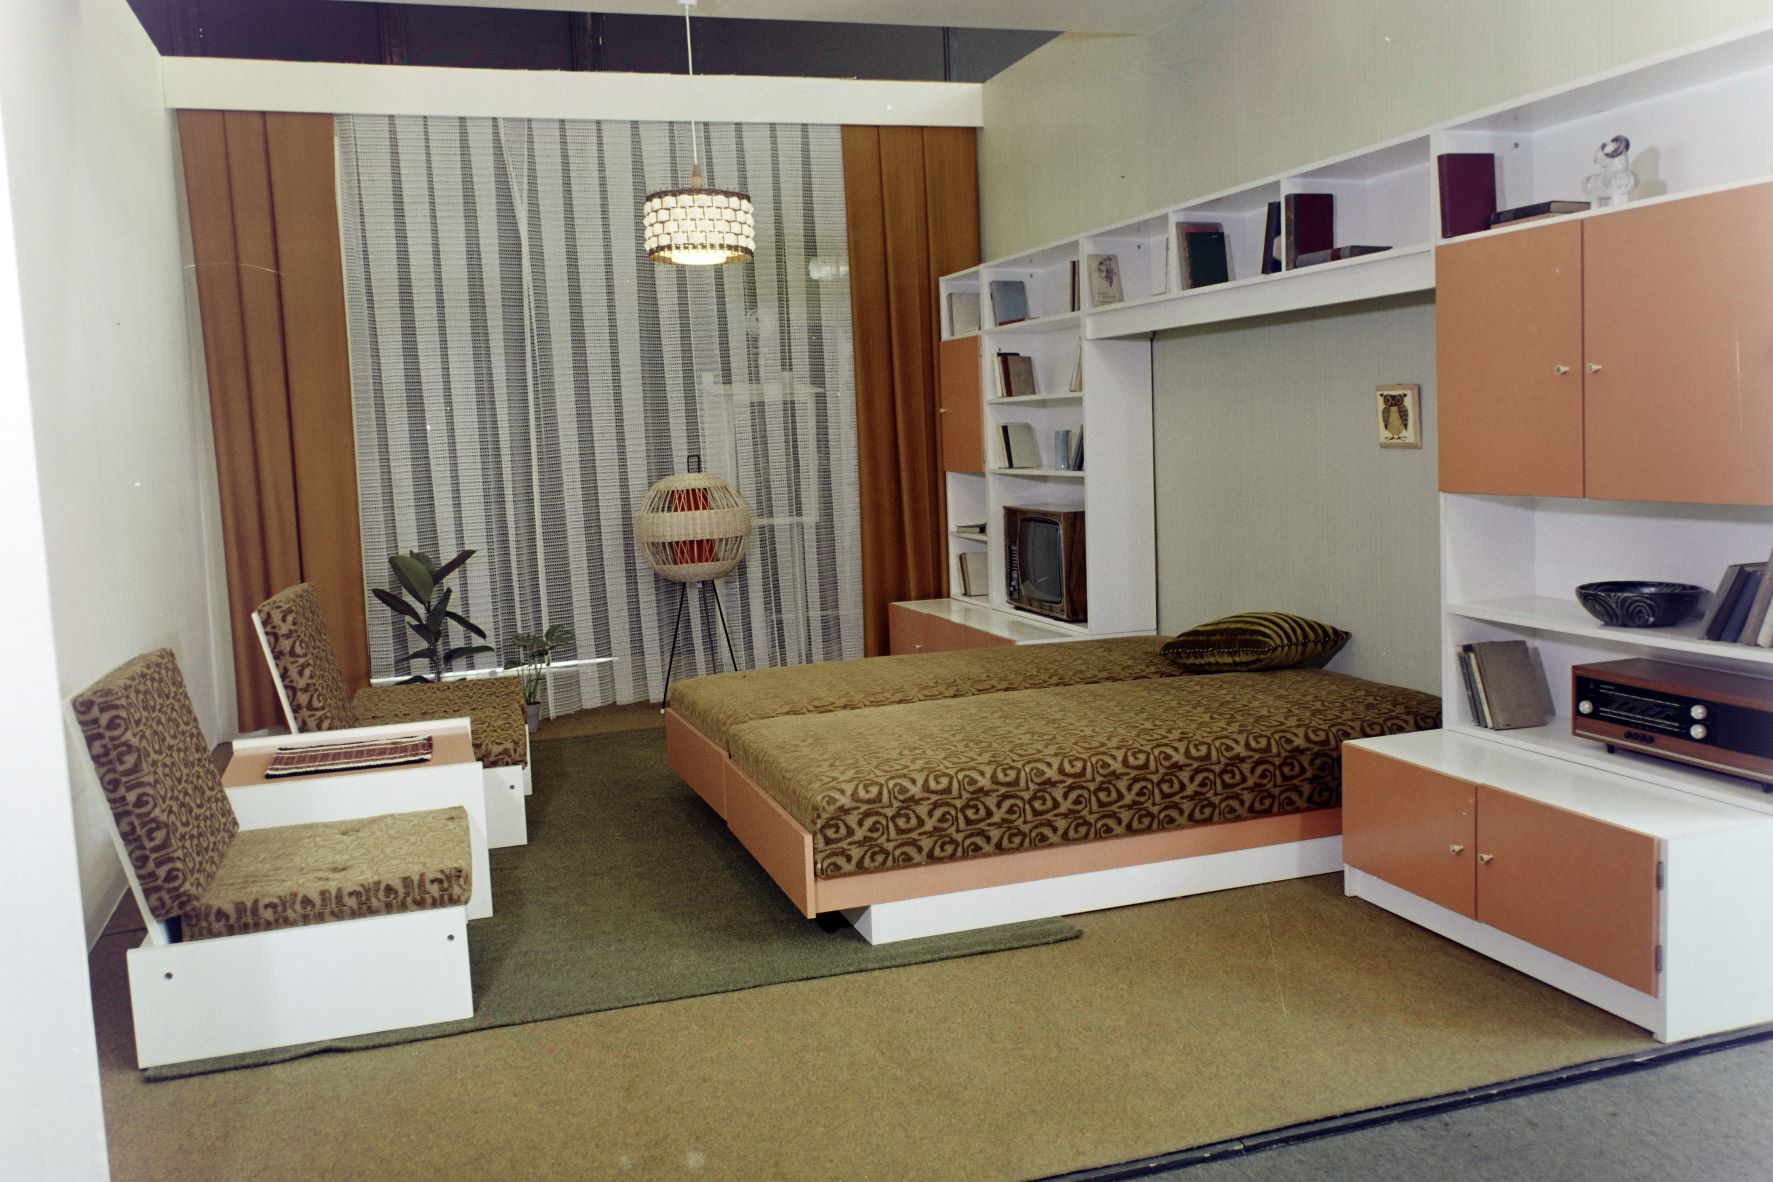 Otthon '73 bútorkiállítás a BNV területén.